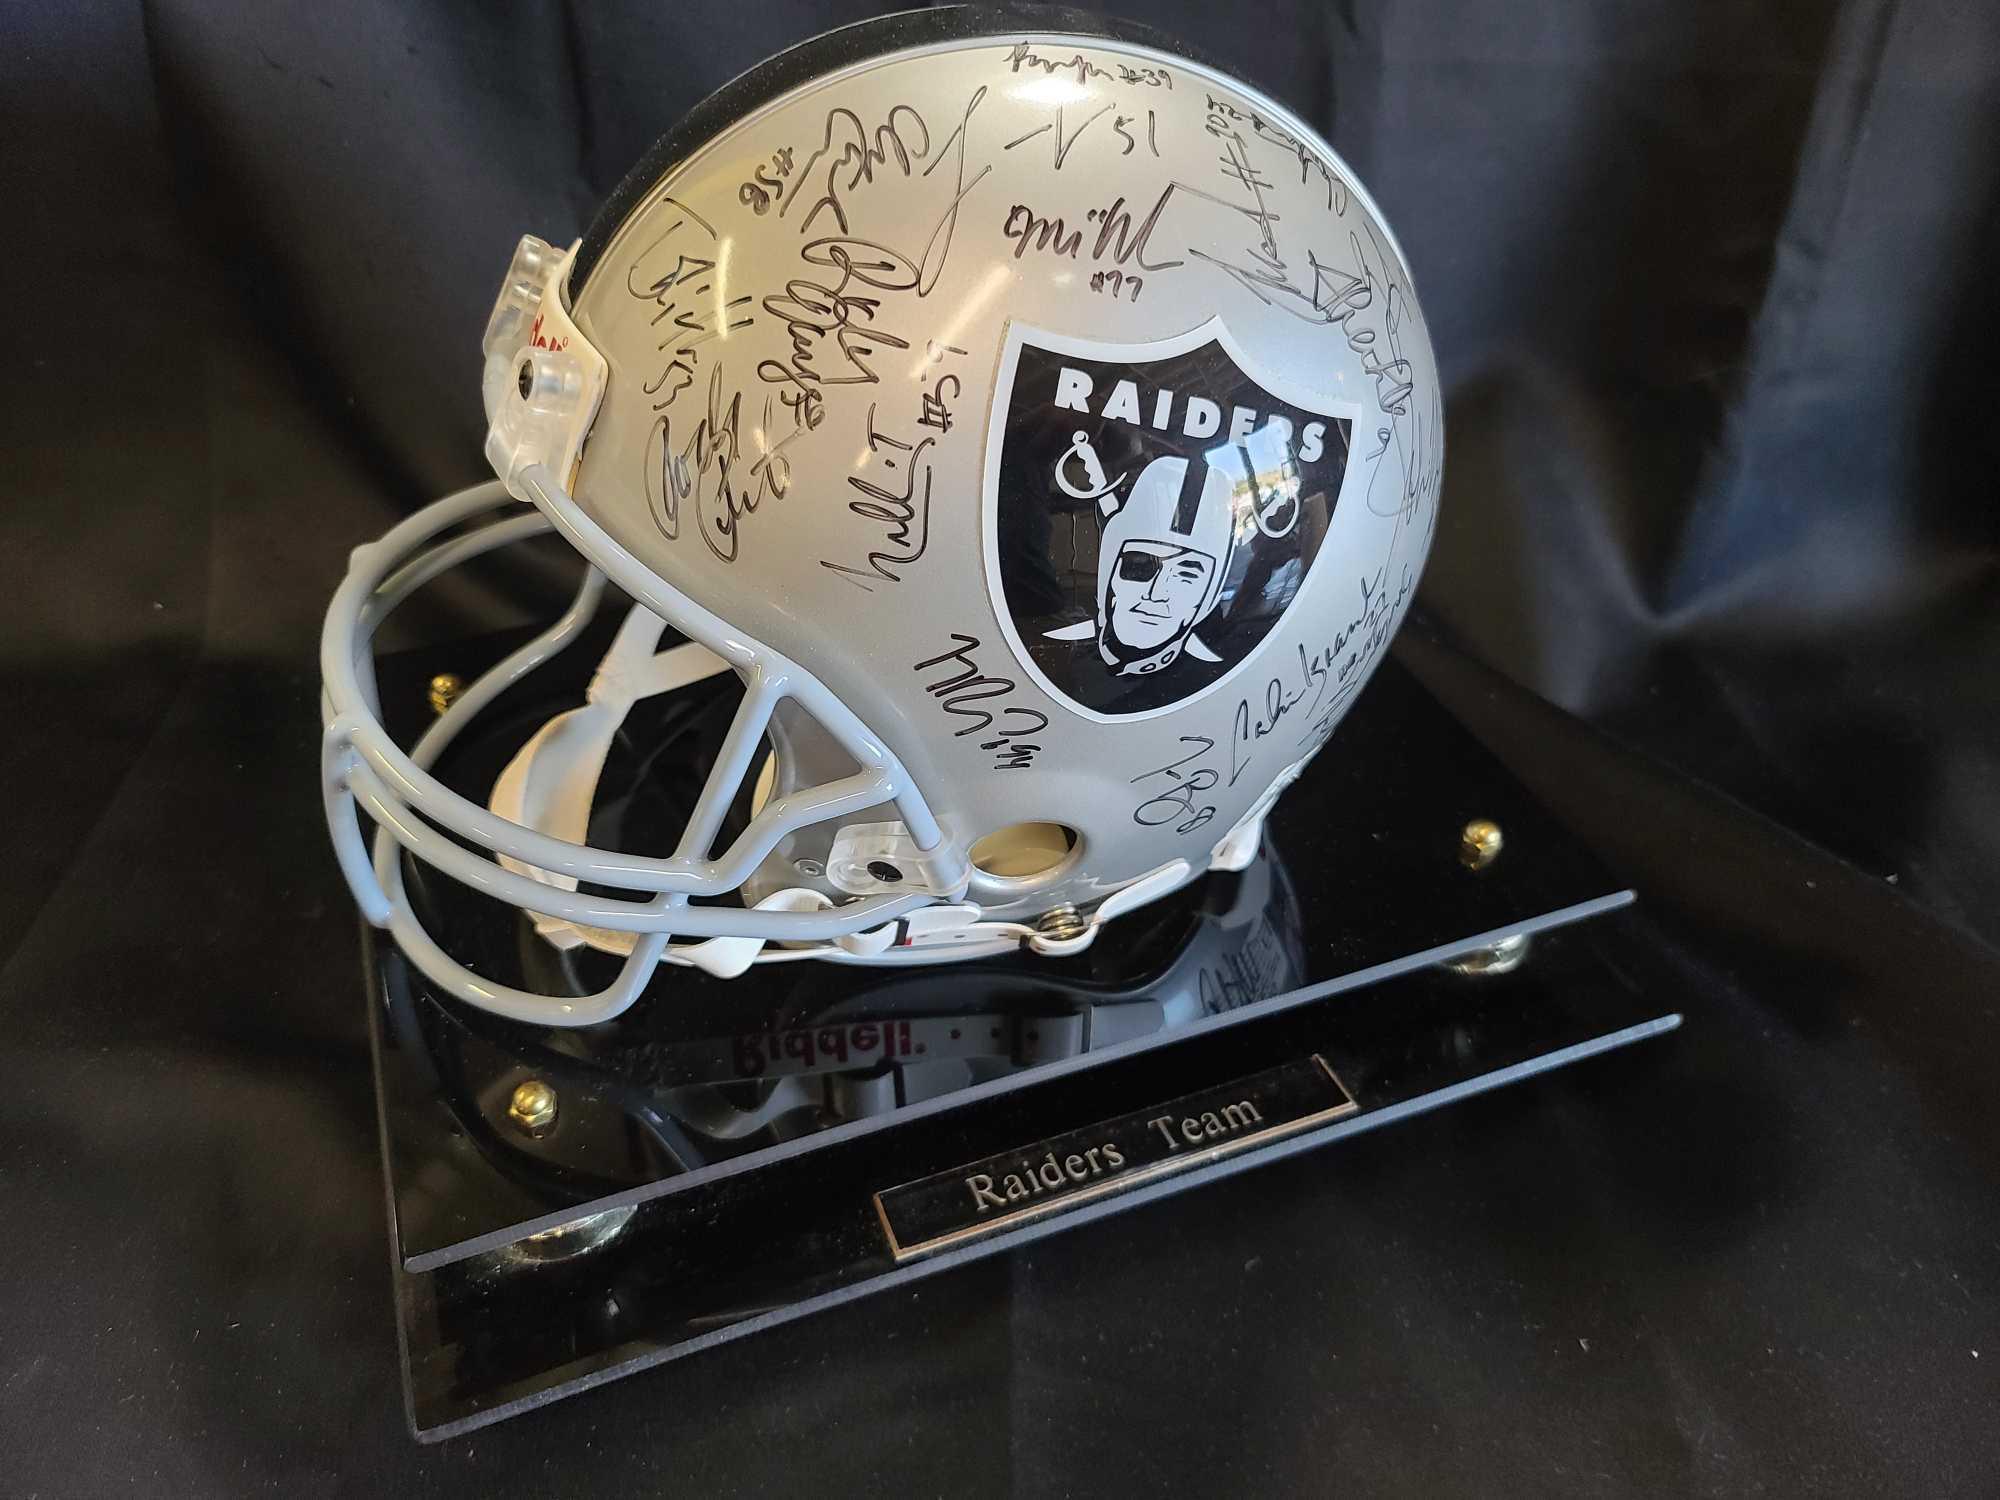 Helmet plaque says Raiders Team signed Hof